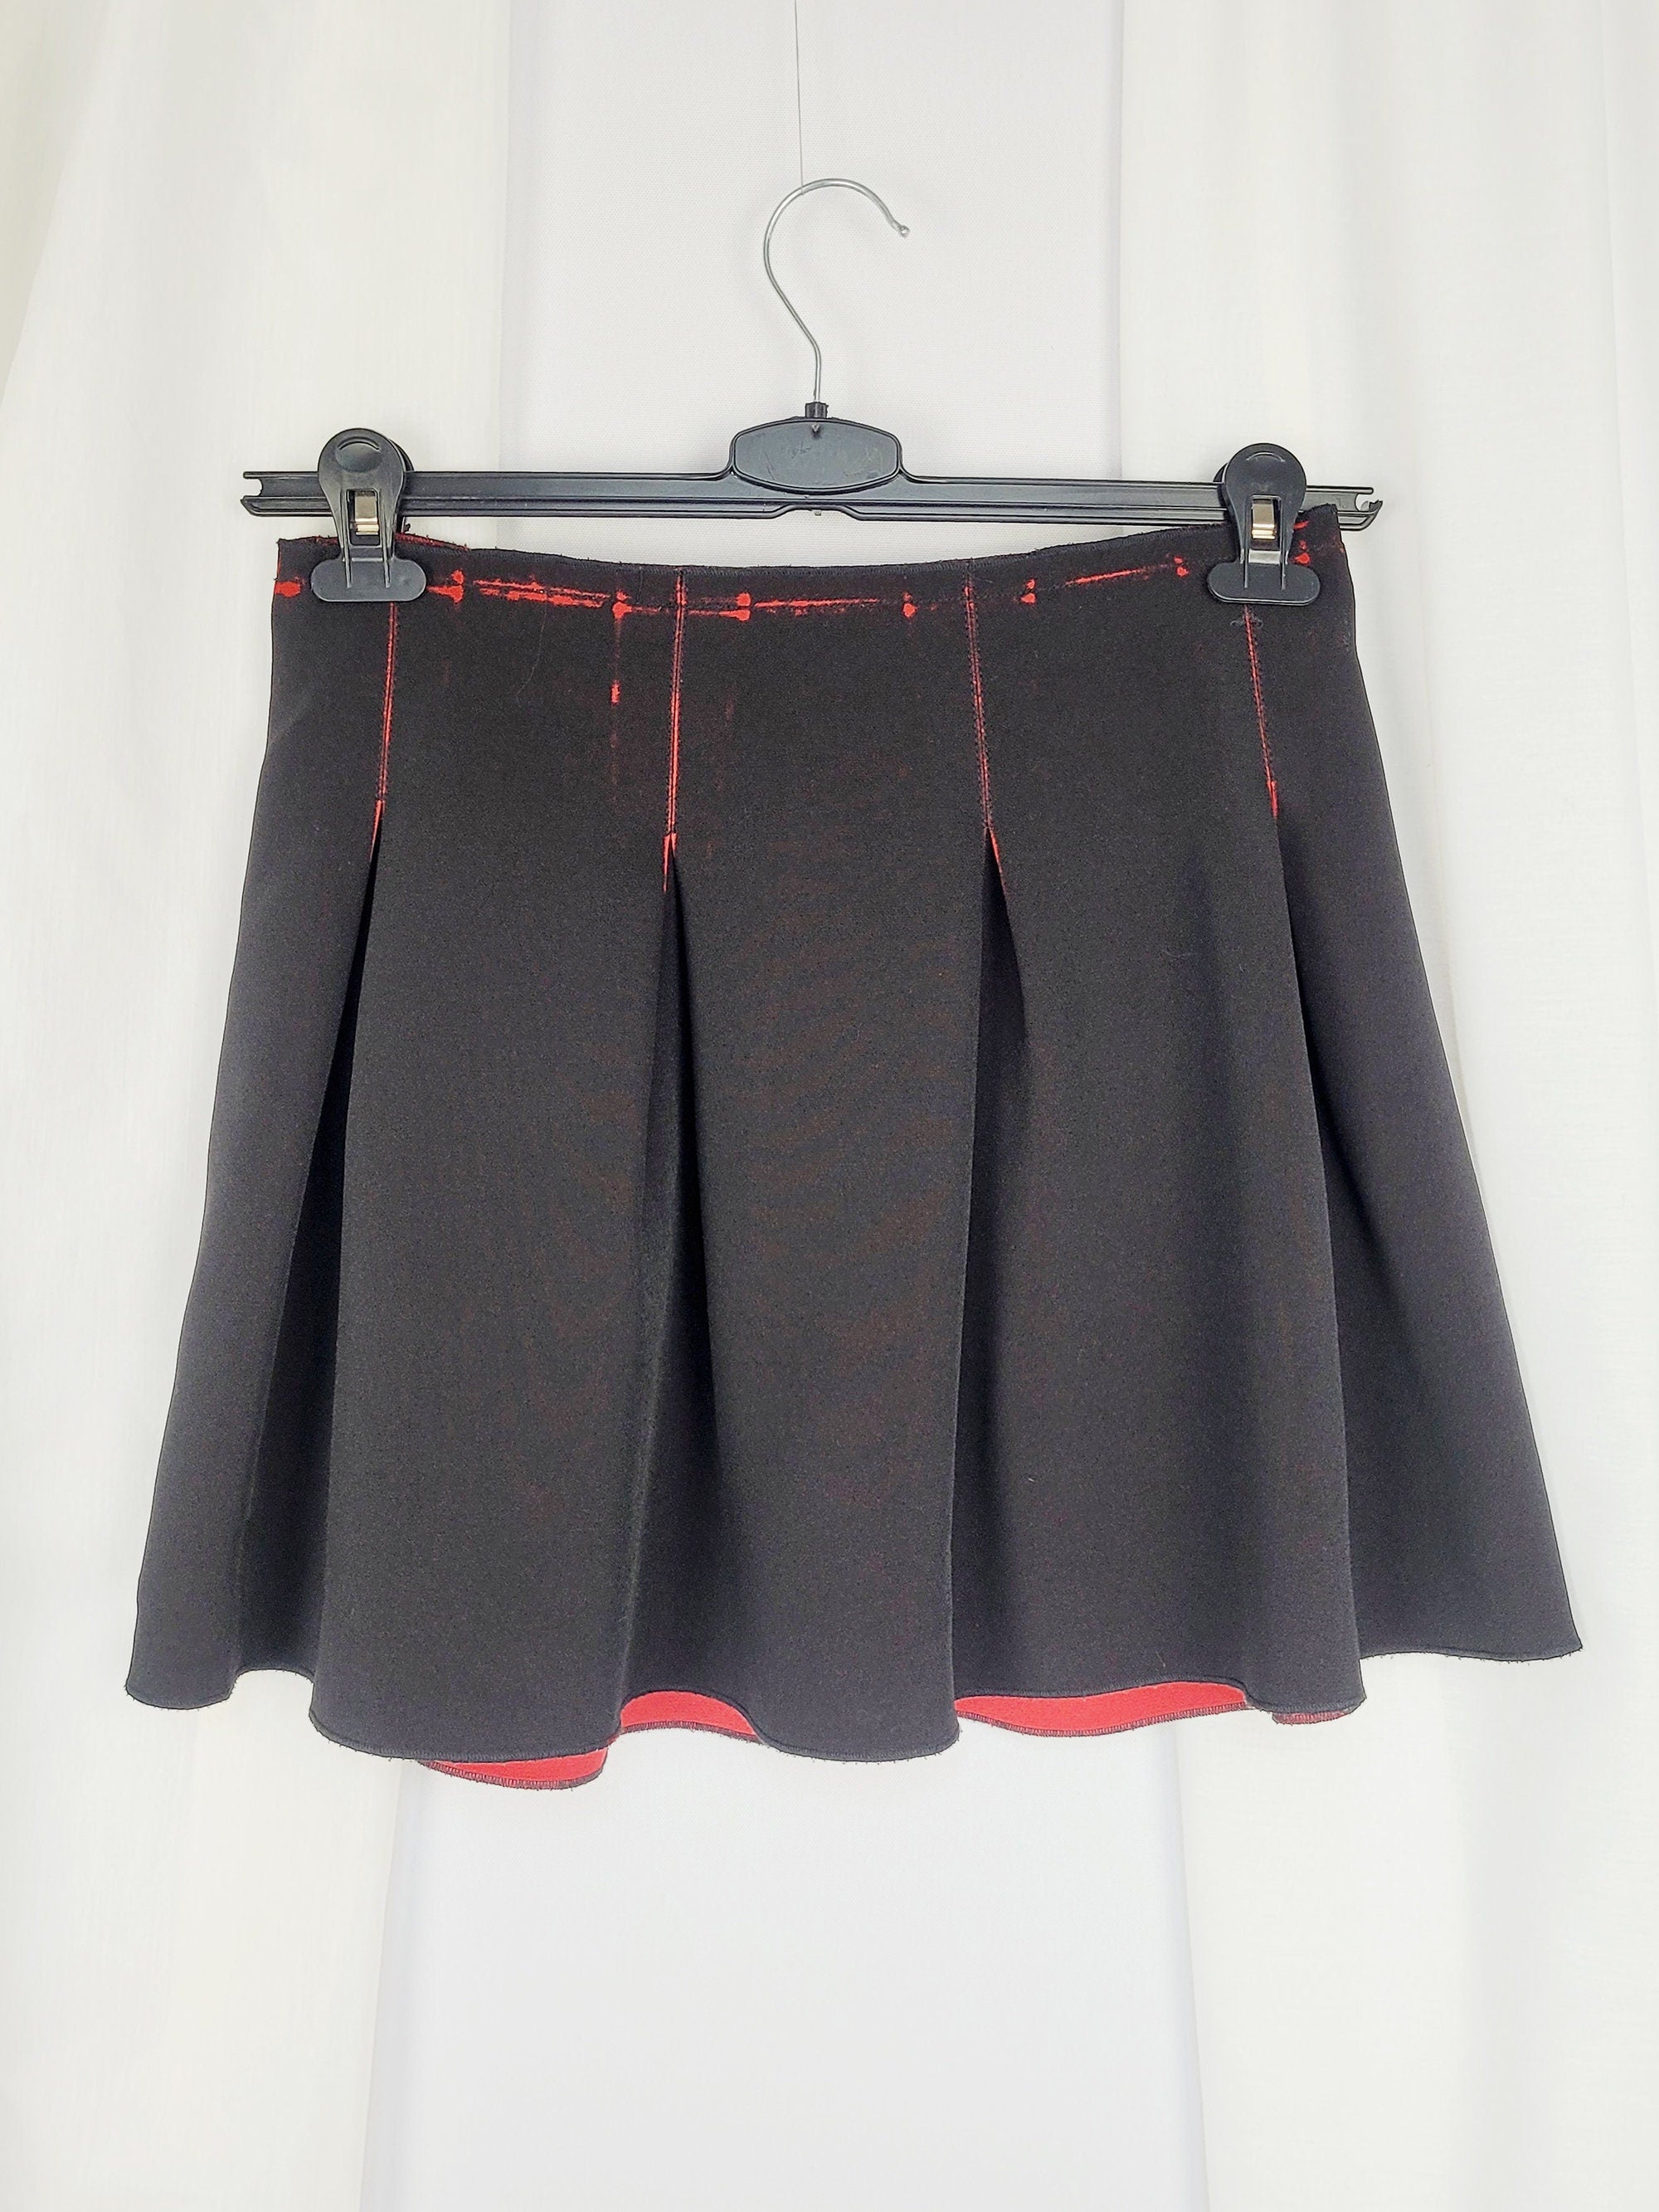 90s black red minimalist pleated Grunge mini skirt